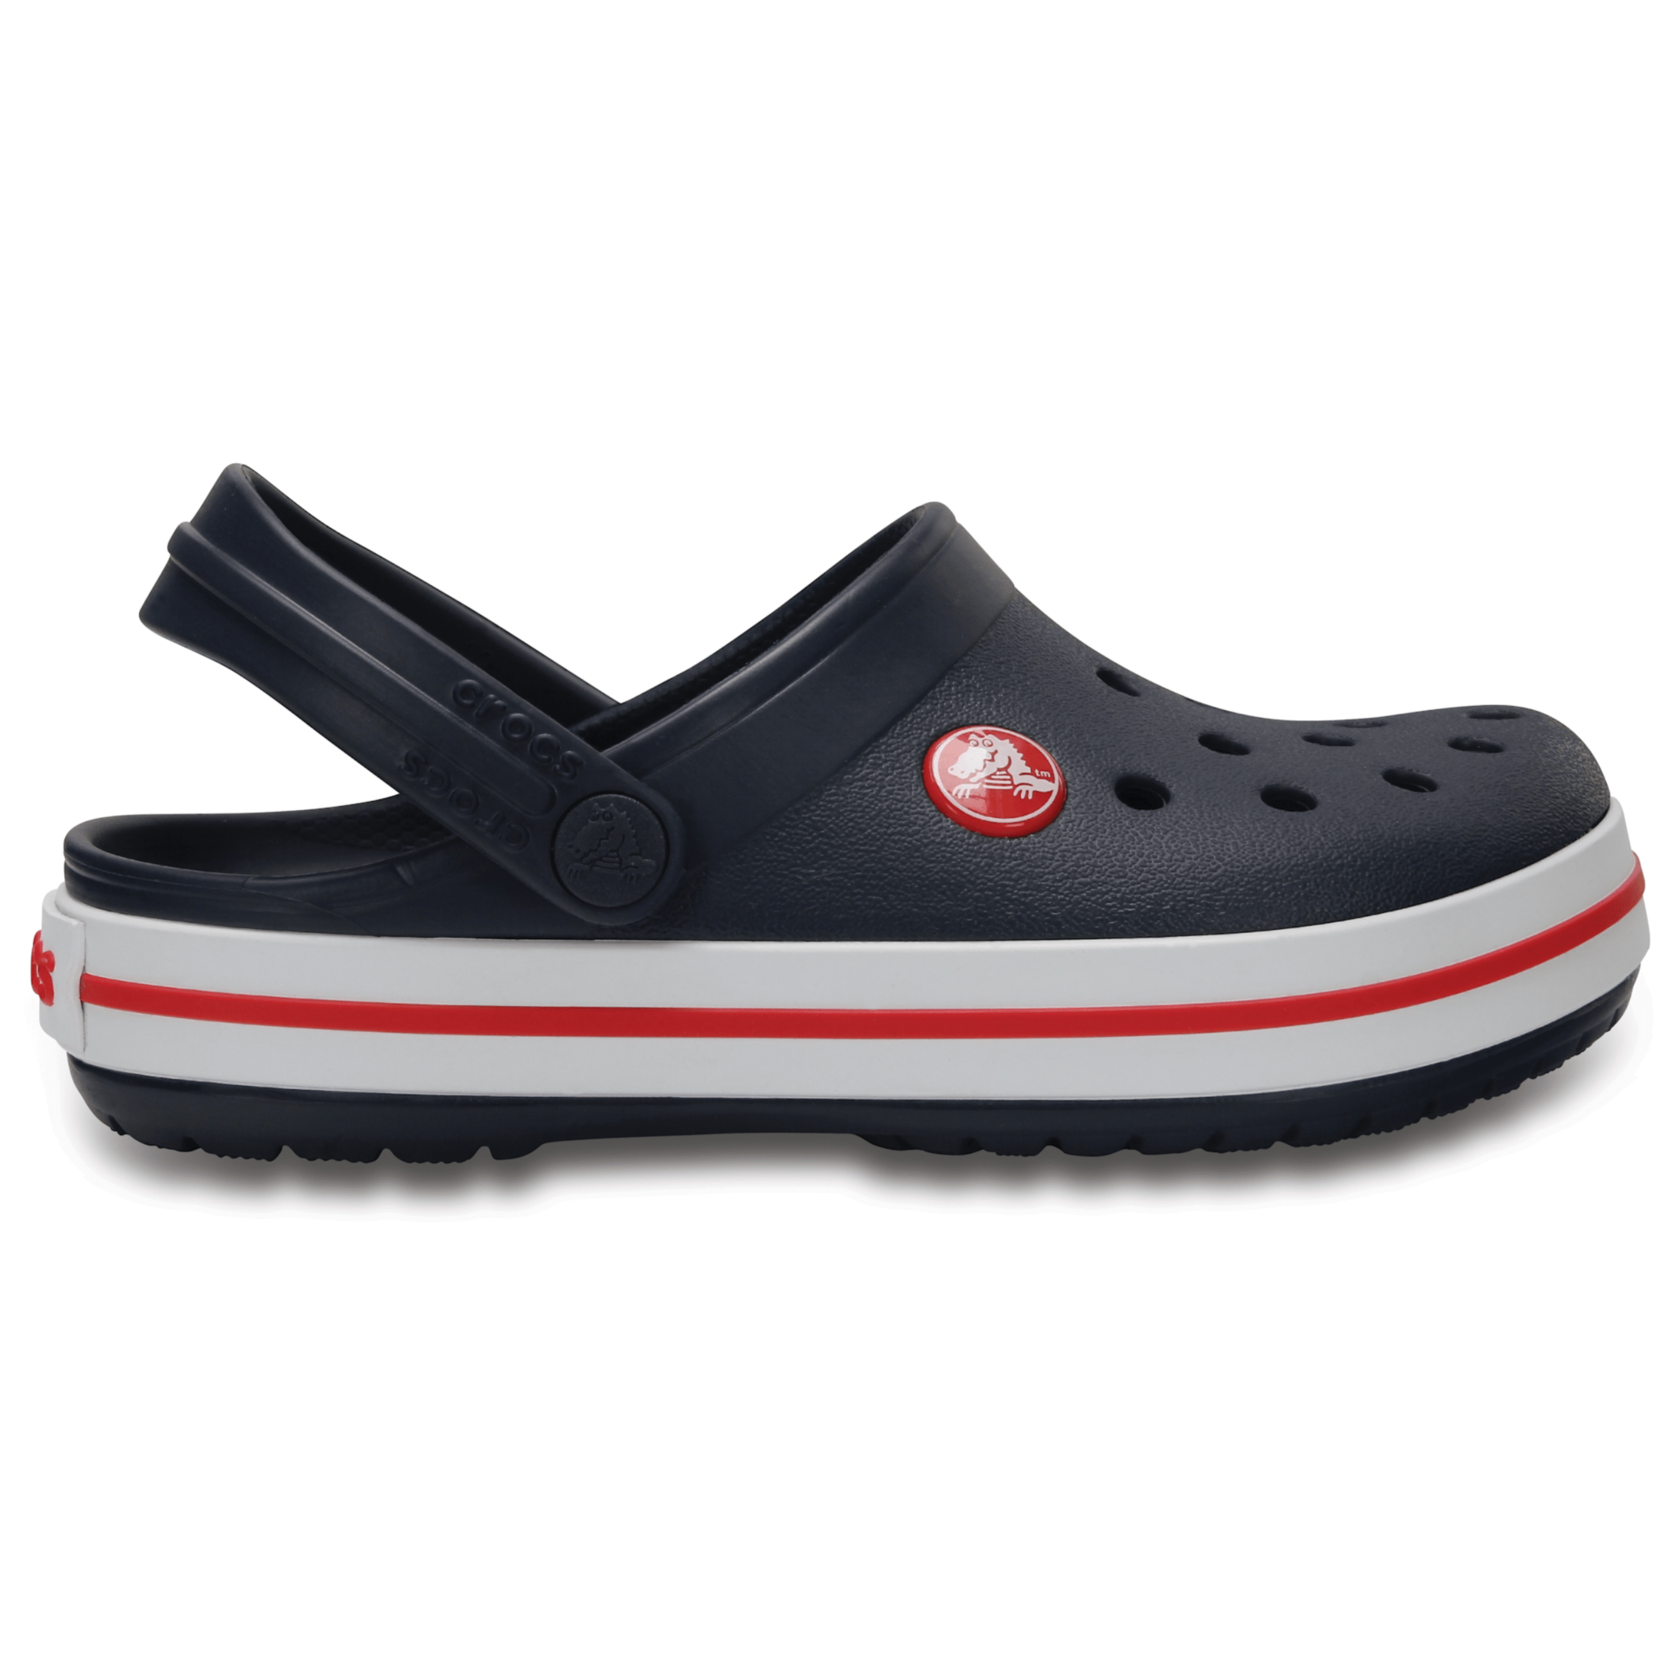 Crocs Kids’ Crocband Clog Navy / Red Детские Сабо Крокс Крокбенд Кидс 24 204537 фото спеши выбрать самые модные товары Crocs